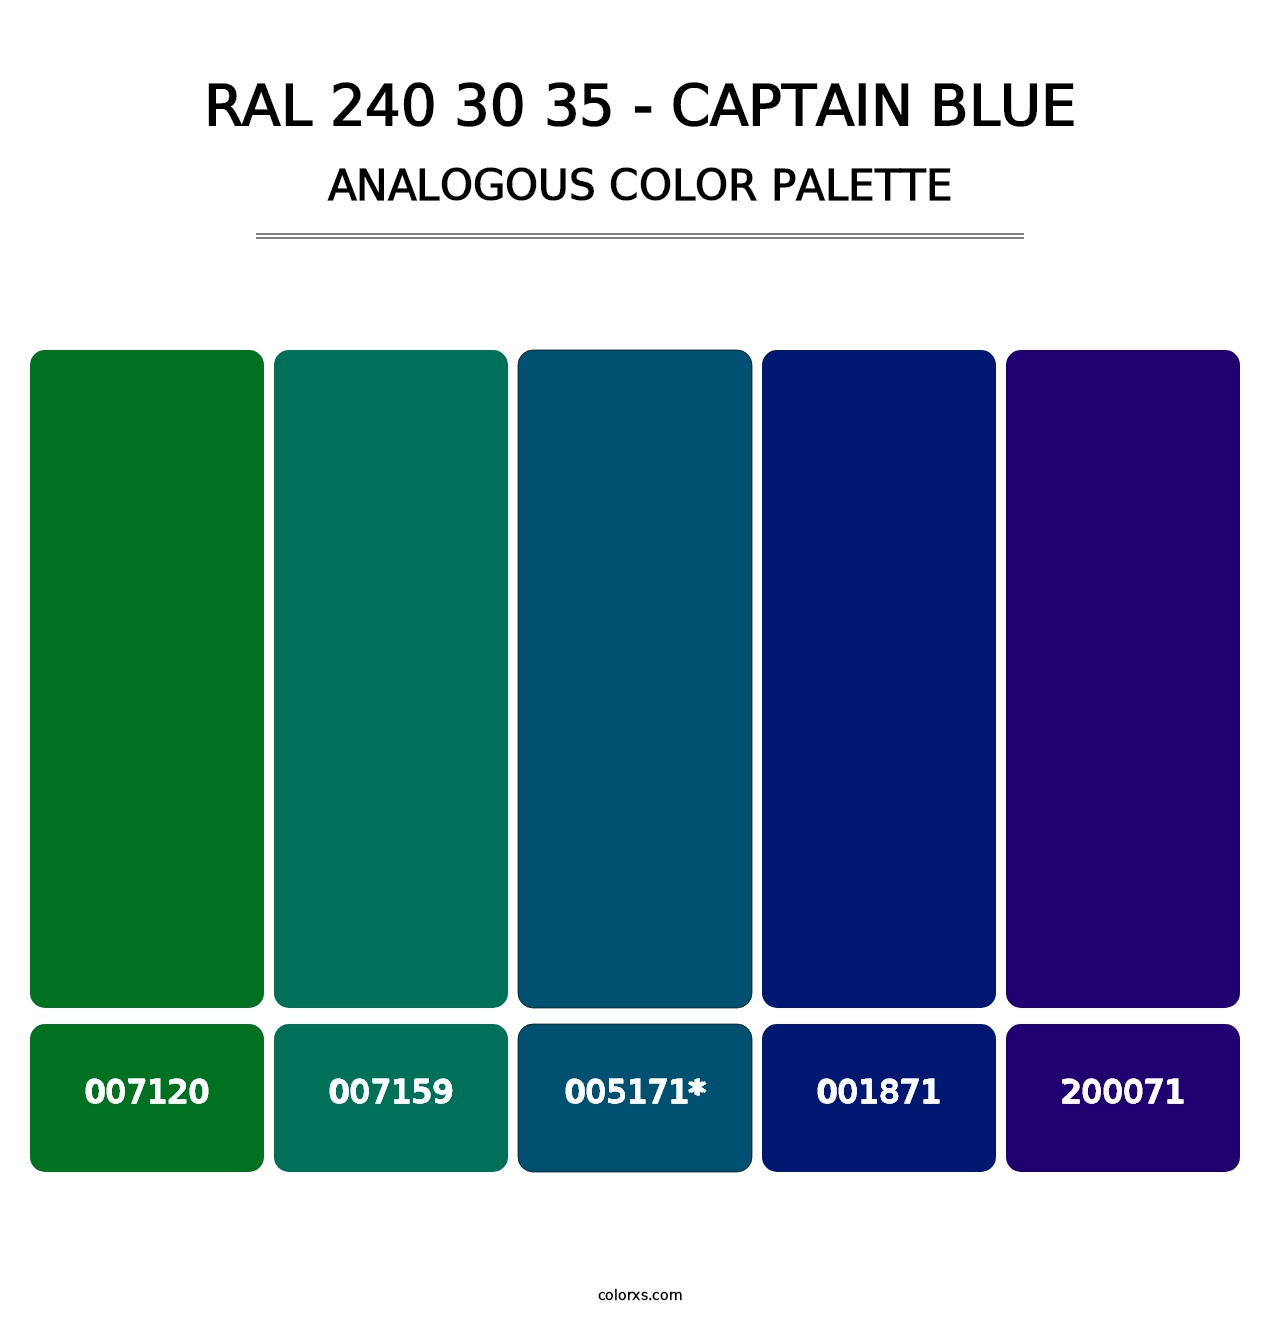 RAL 240 30 35 - Captain Blue - Analogous Color Palette